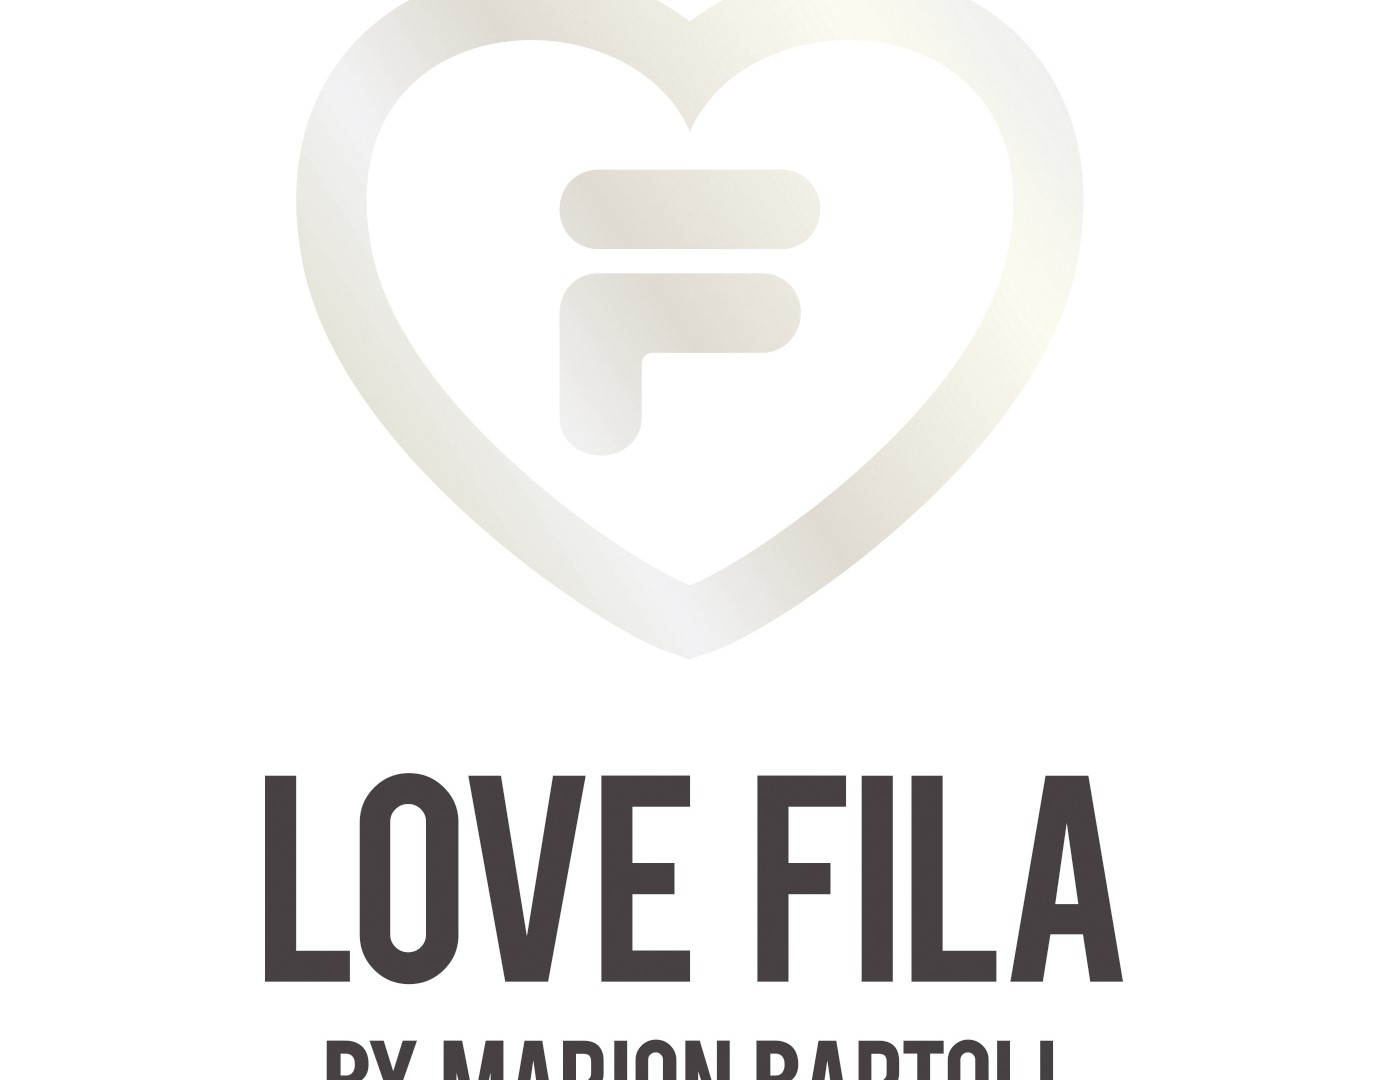 LOVE FILA by Marion Bartoli